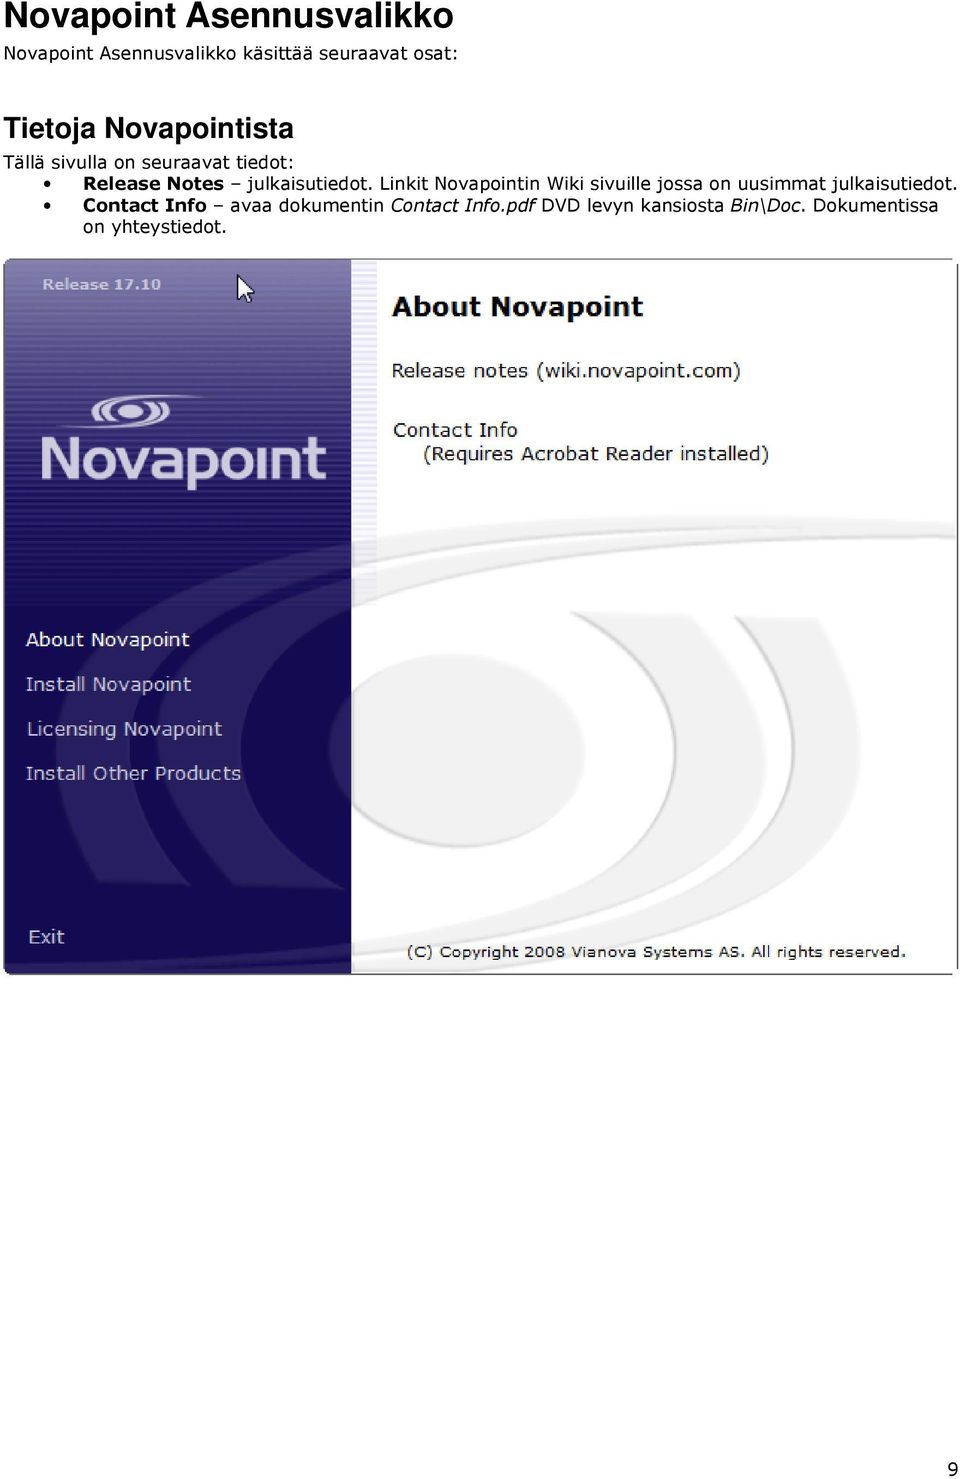 Linkit Novapointin Wiki sivuille jossa on uusimmat julkaisutiedot.